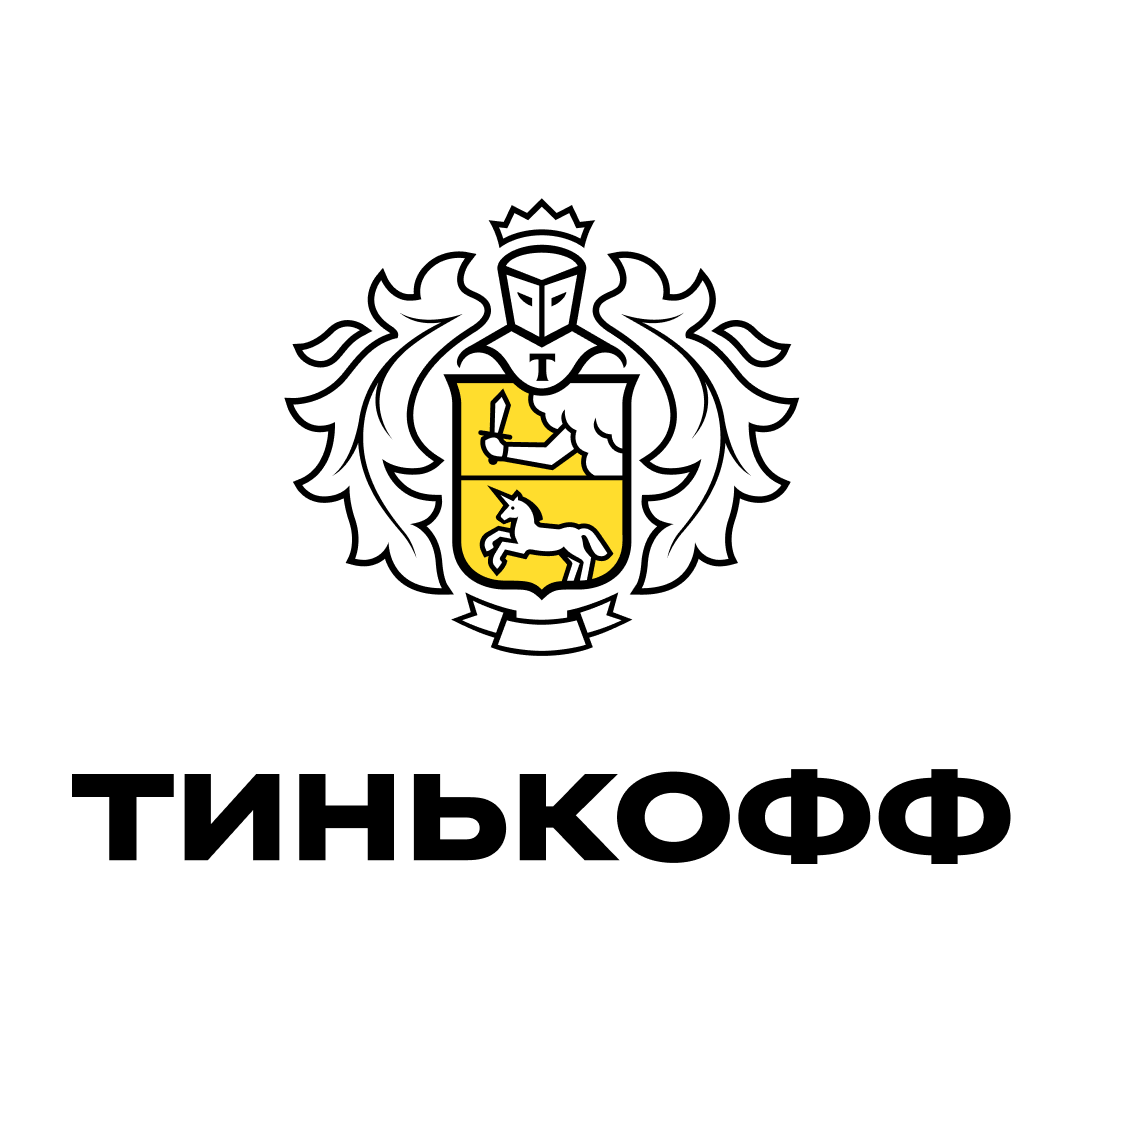 Банки астрахани тинькофф. Тинькофф. Тинькофф лого. Прозрачный логотип тинькофф. Чернобелый логотип Тин.